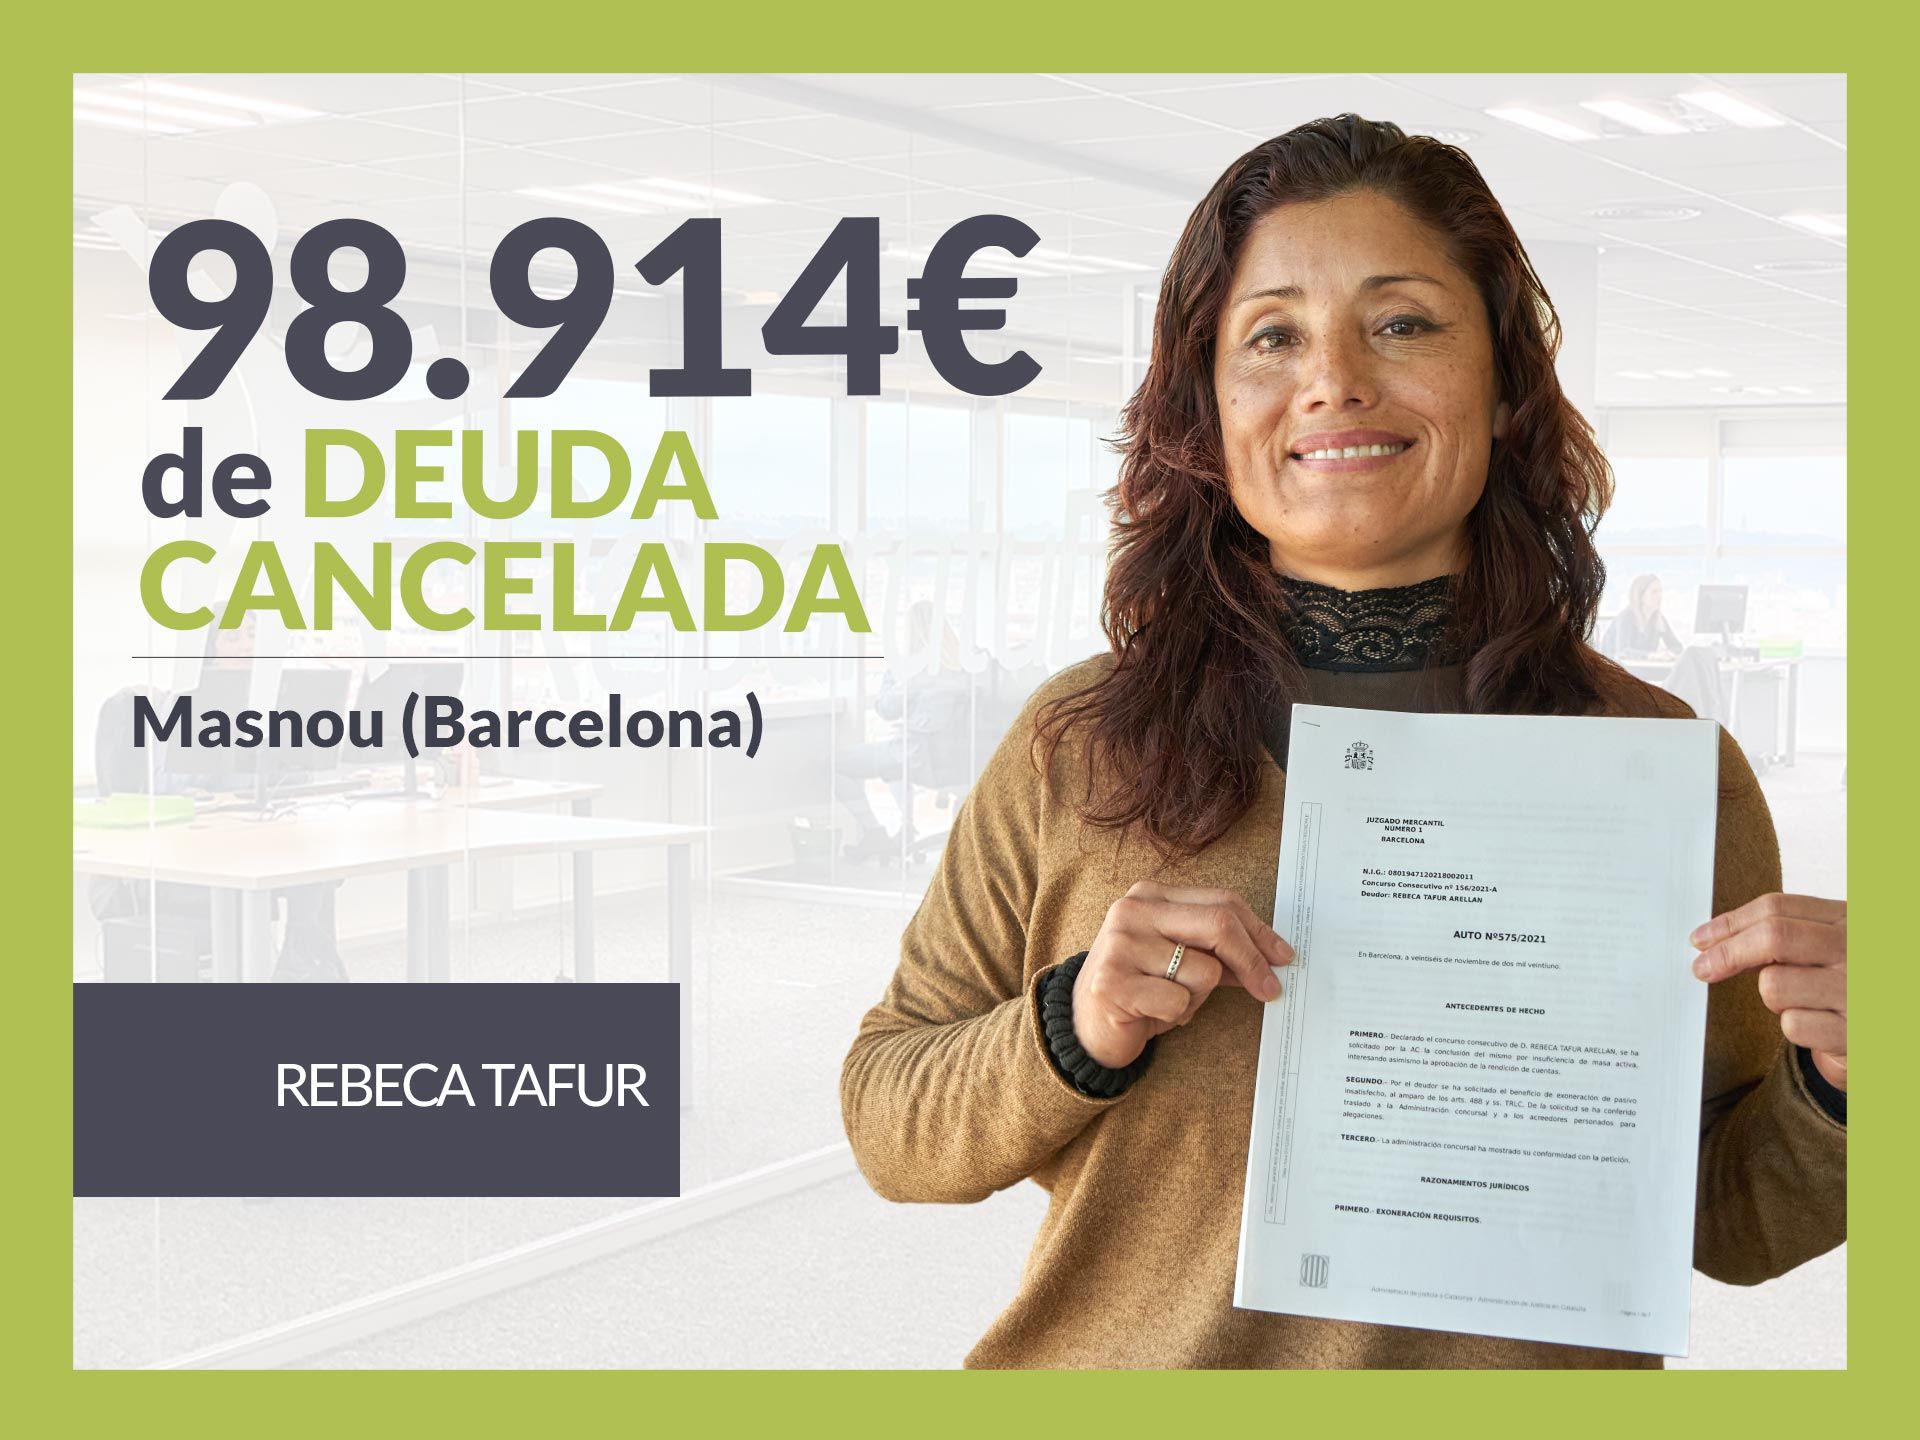 Repara tu Deuda Abogados cancela 98.914? en El Masnou (Barcelona) con la Ley de Segunda Oportunidad